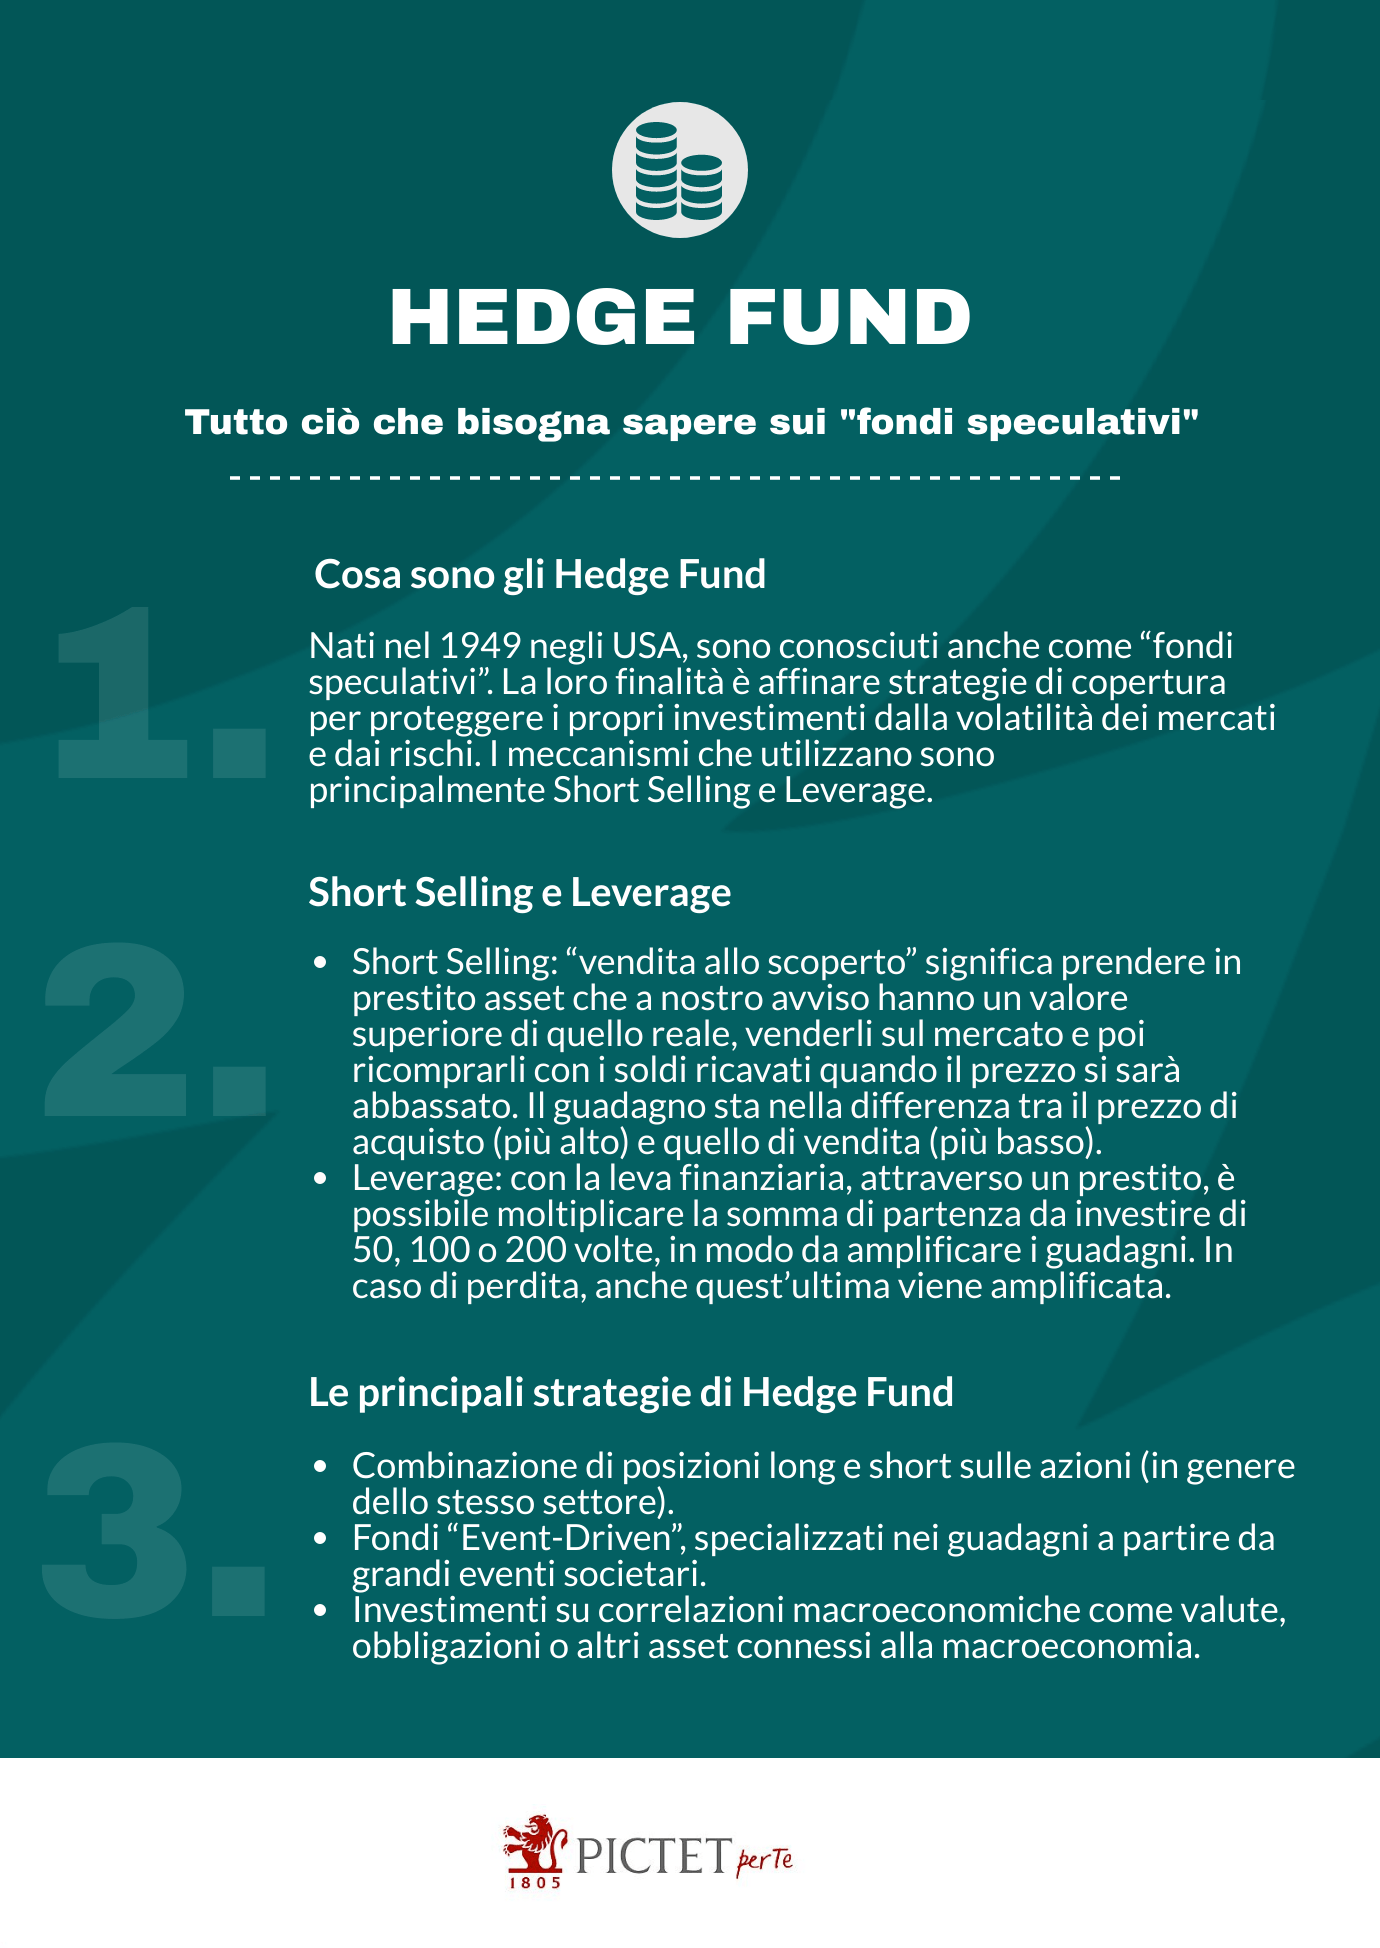 Pictet_GuidaFinanza_20210309_Hedge_Fund